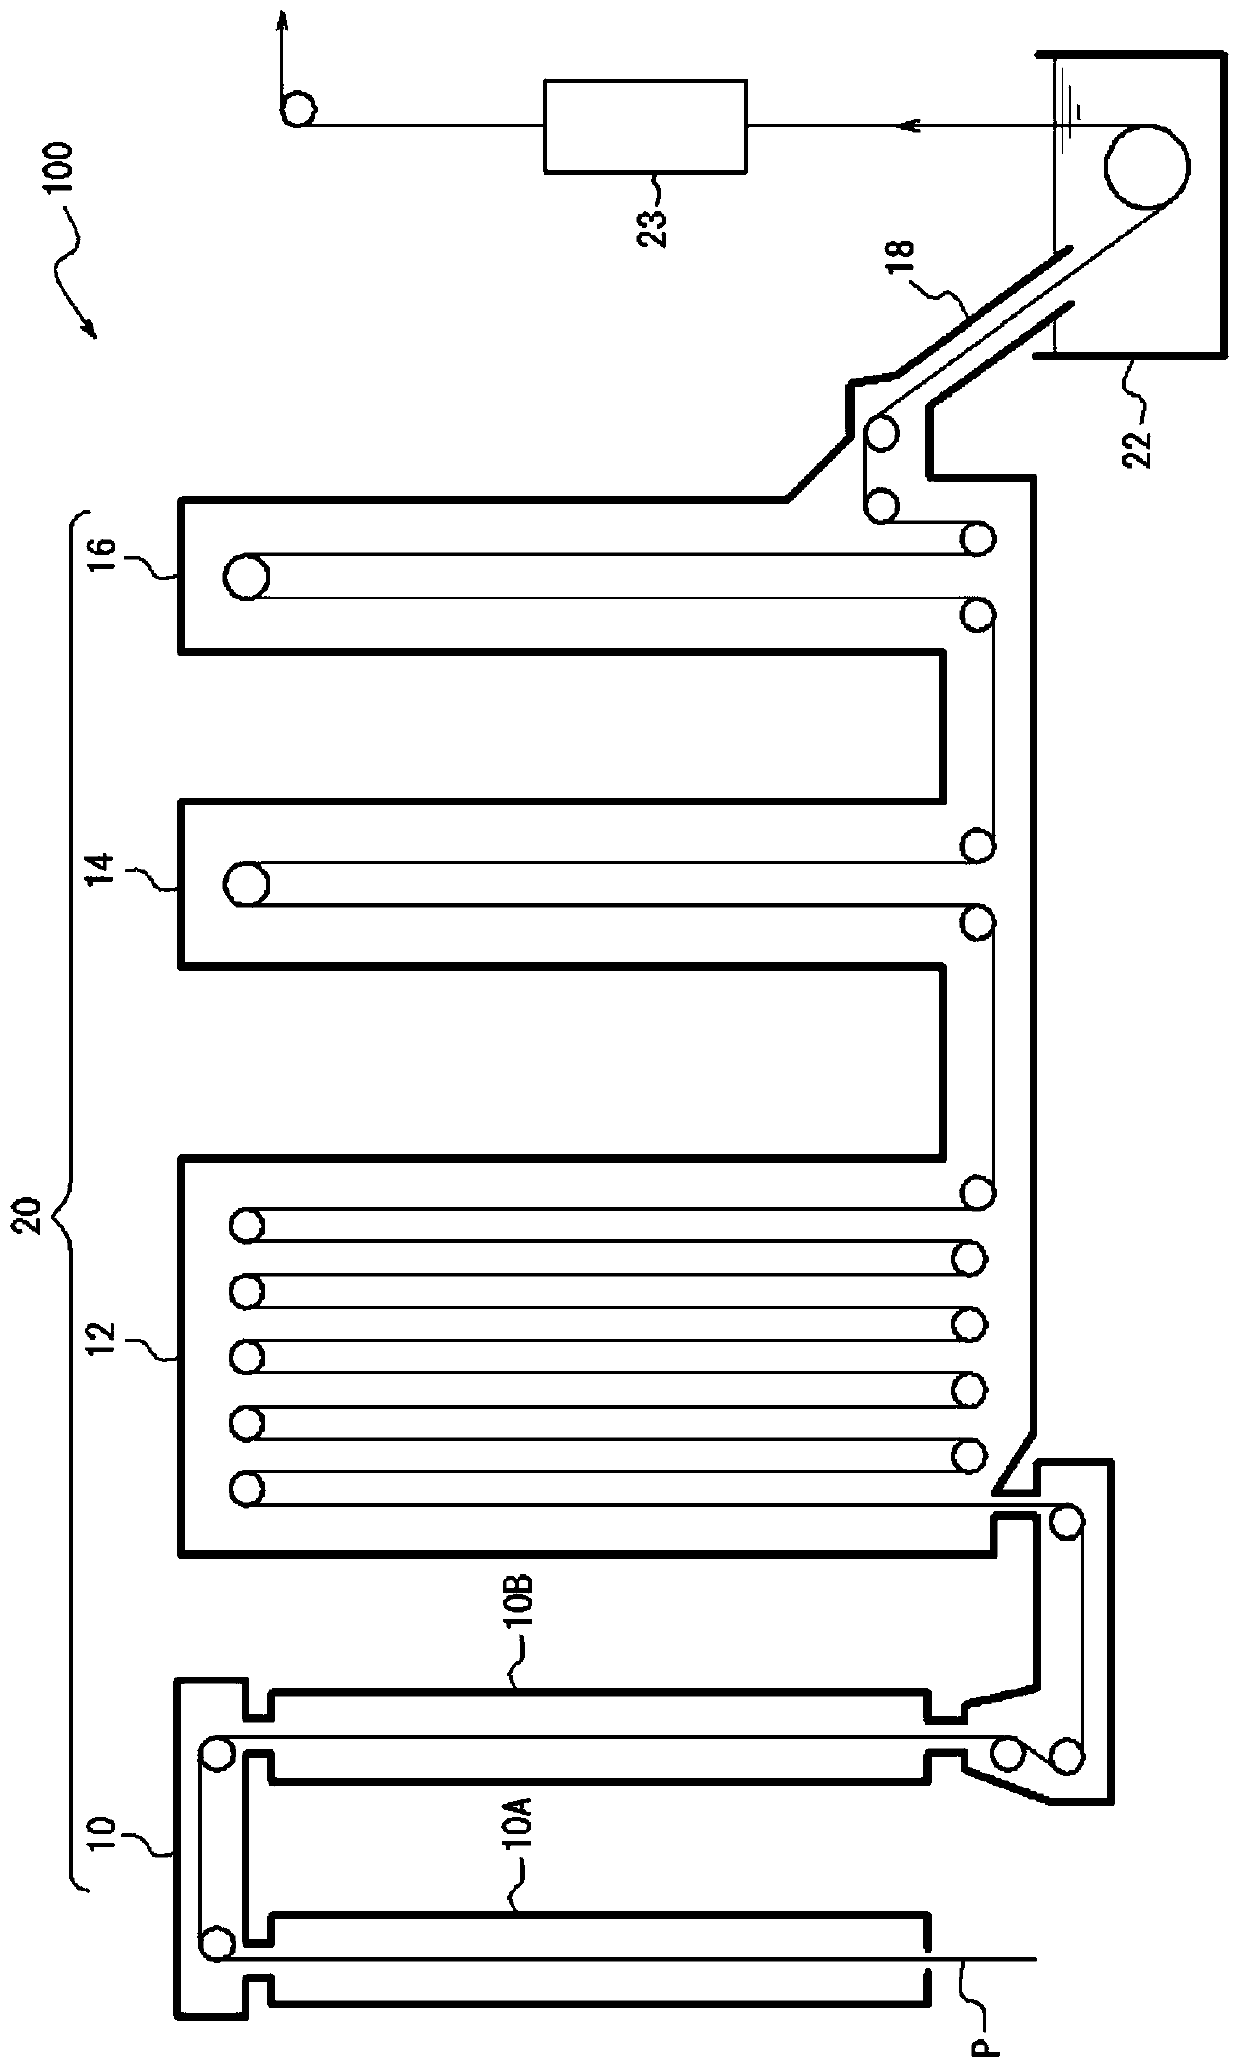 Manufacturing method of hot-dip galvanized steel sheet